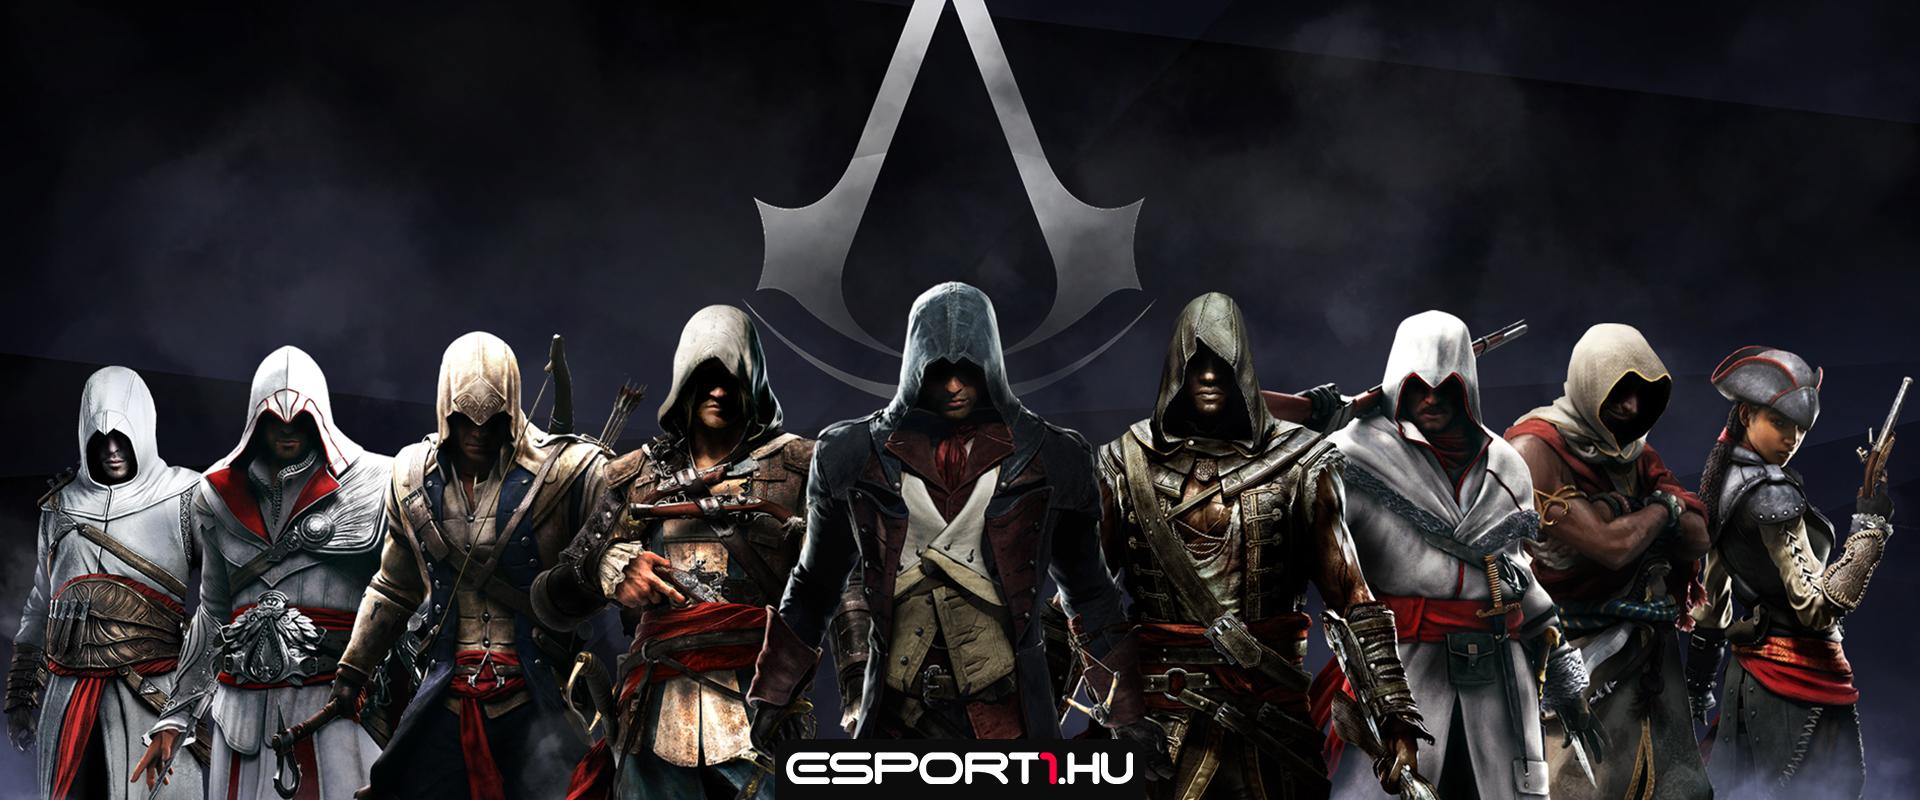 Éles vita alakult ki a következő Assassin's Creed játék kapcsán